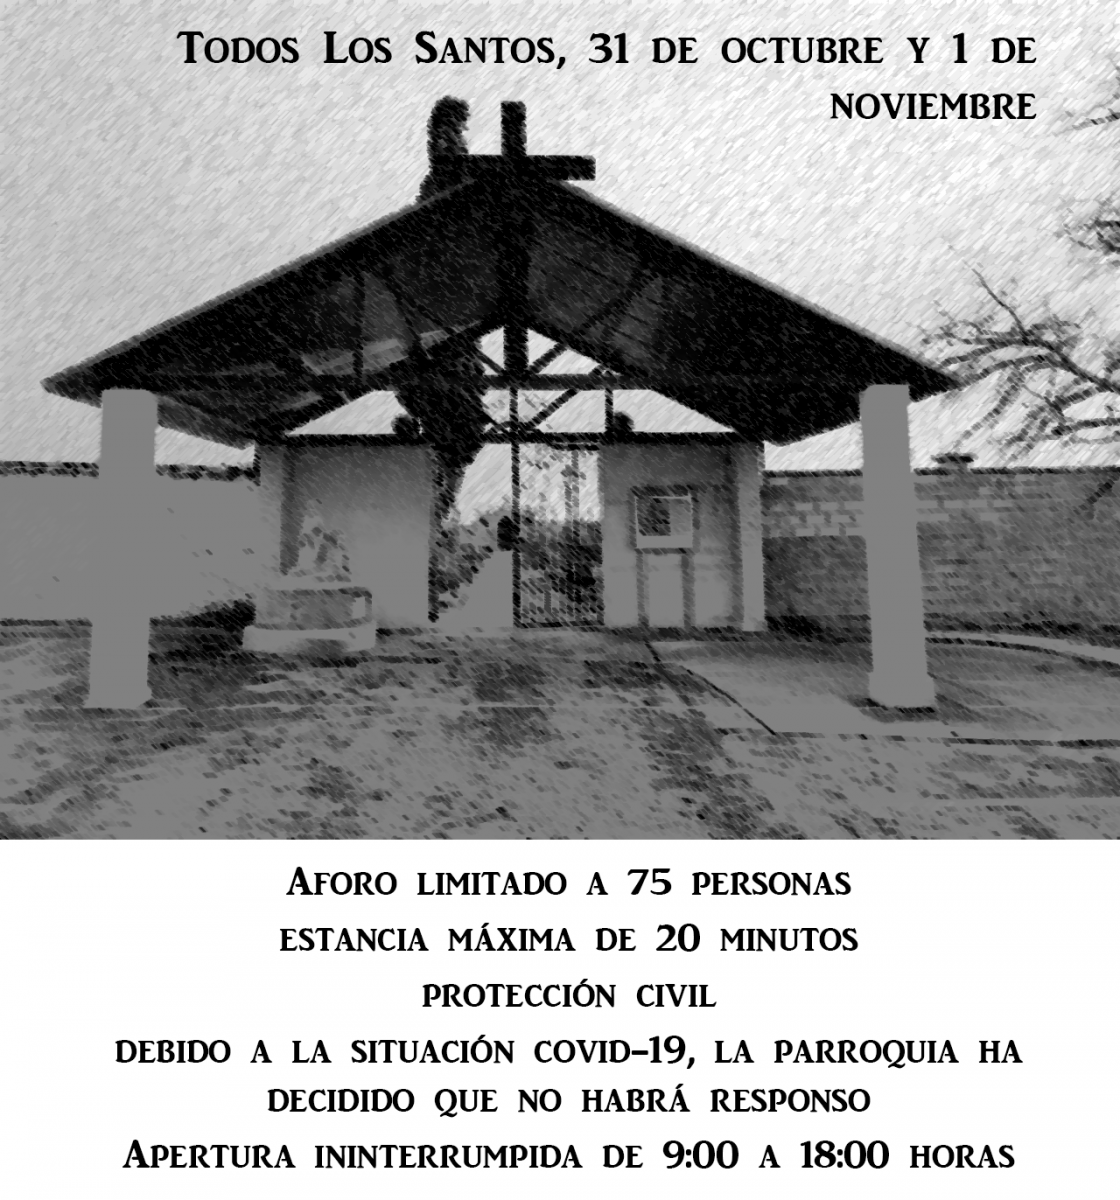 Cementerio-Valencia-De-Don-Juan-Todos-Los-Santos-2020